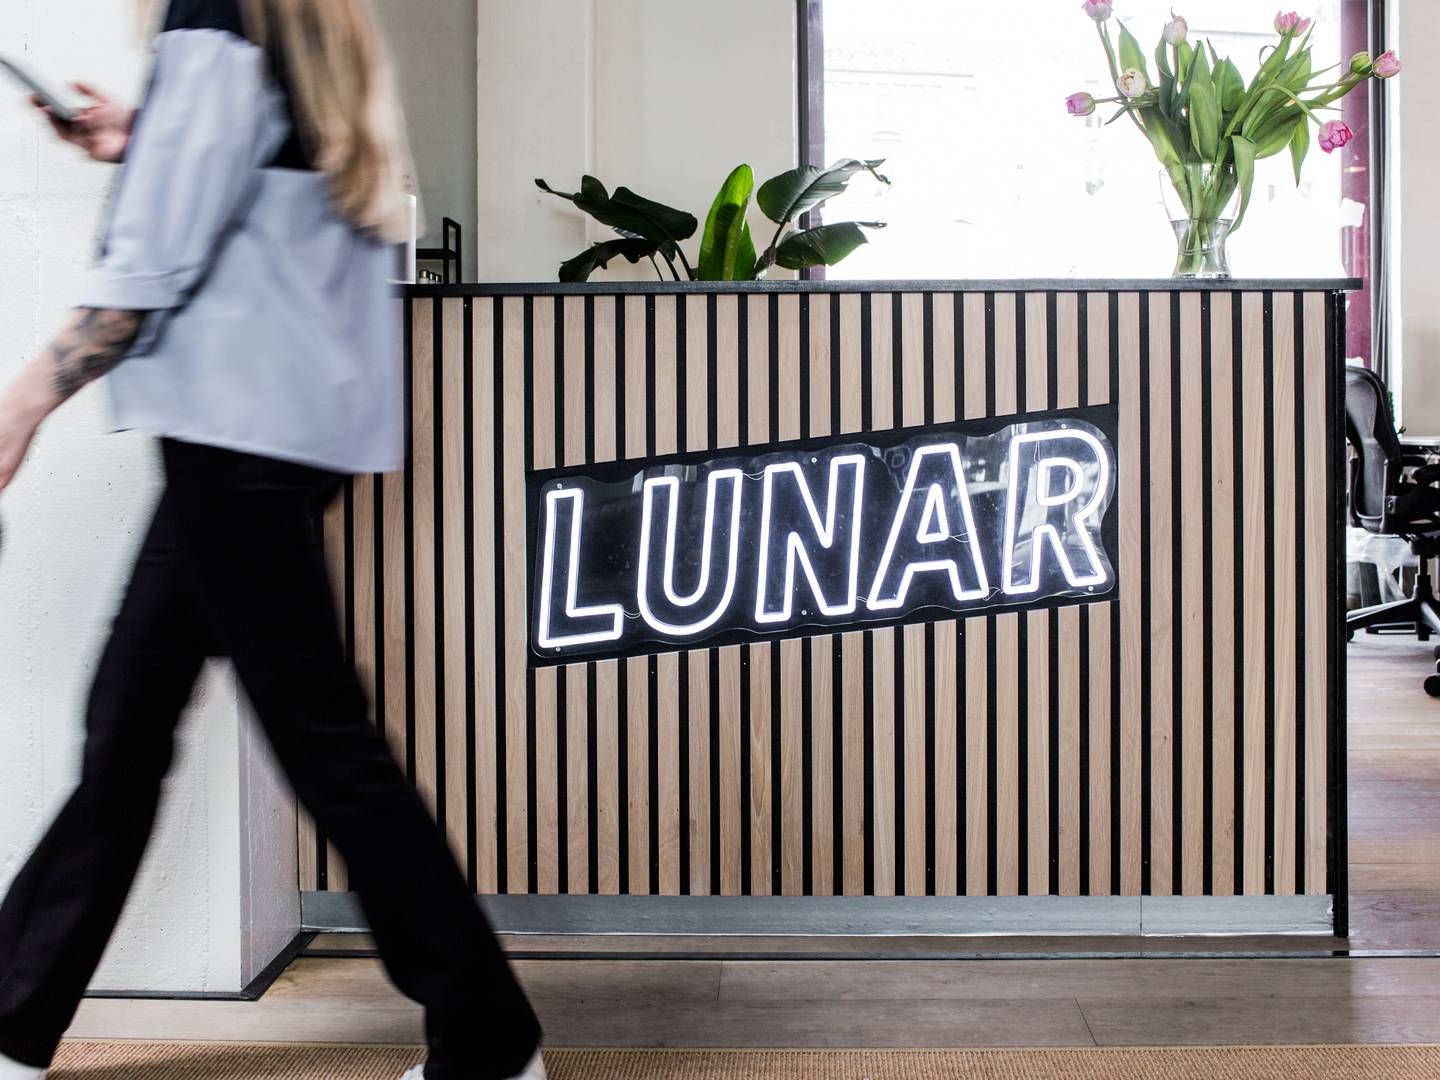 Lunar kommer ikke til at gennemføre købet af norske Instabank som planlagt, og sagen risikerer nu at ende i retten. | Foto: PR/Lunar Bank